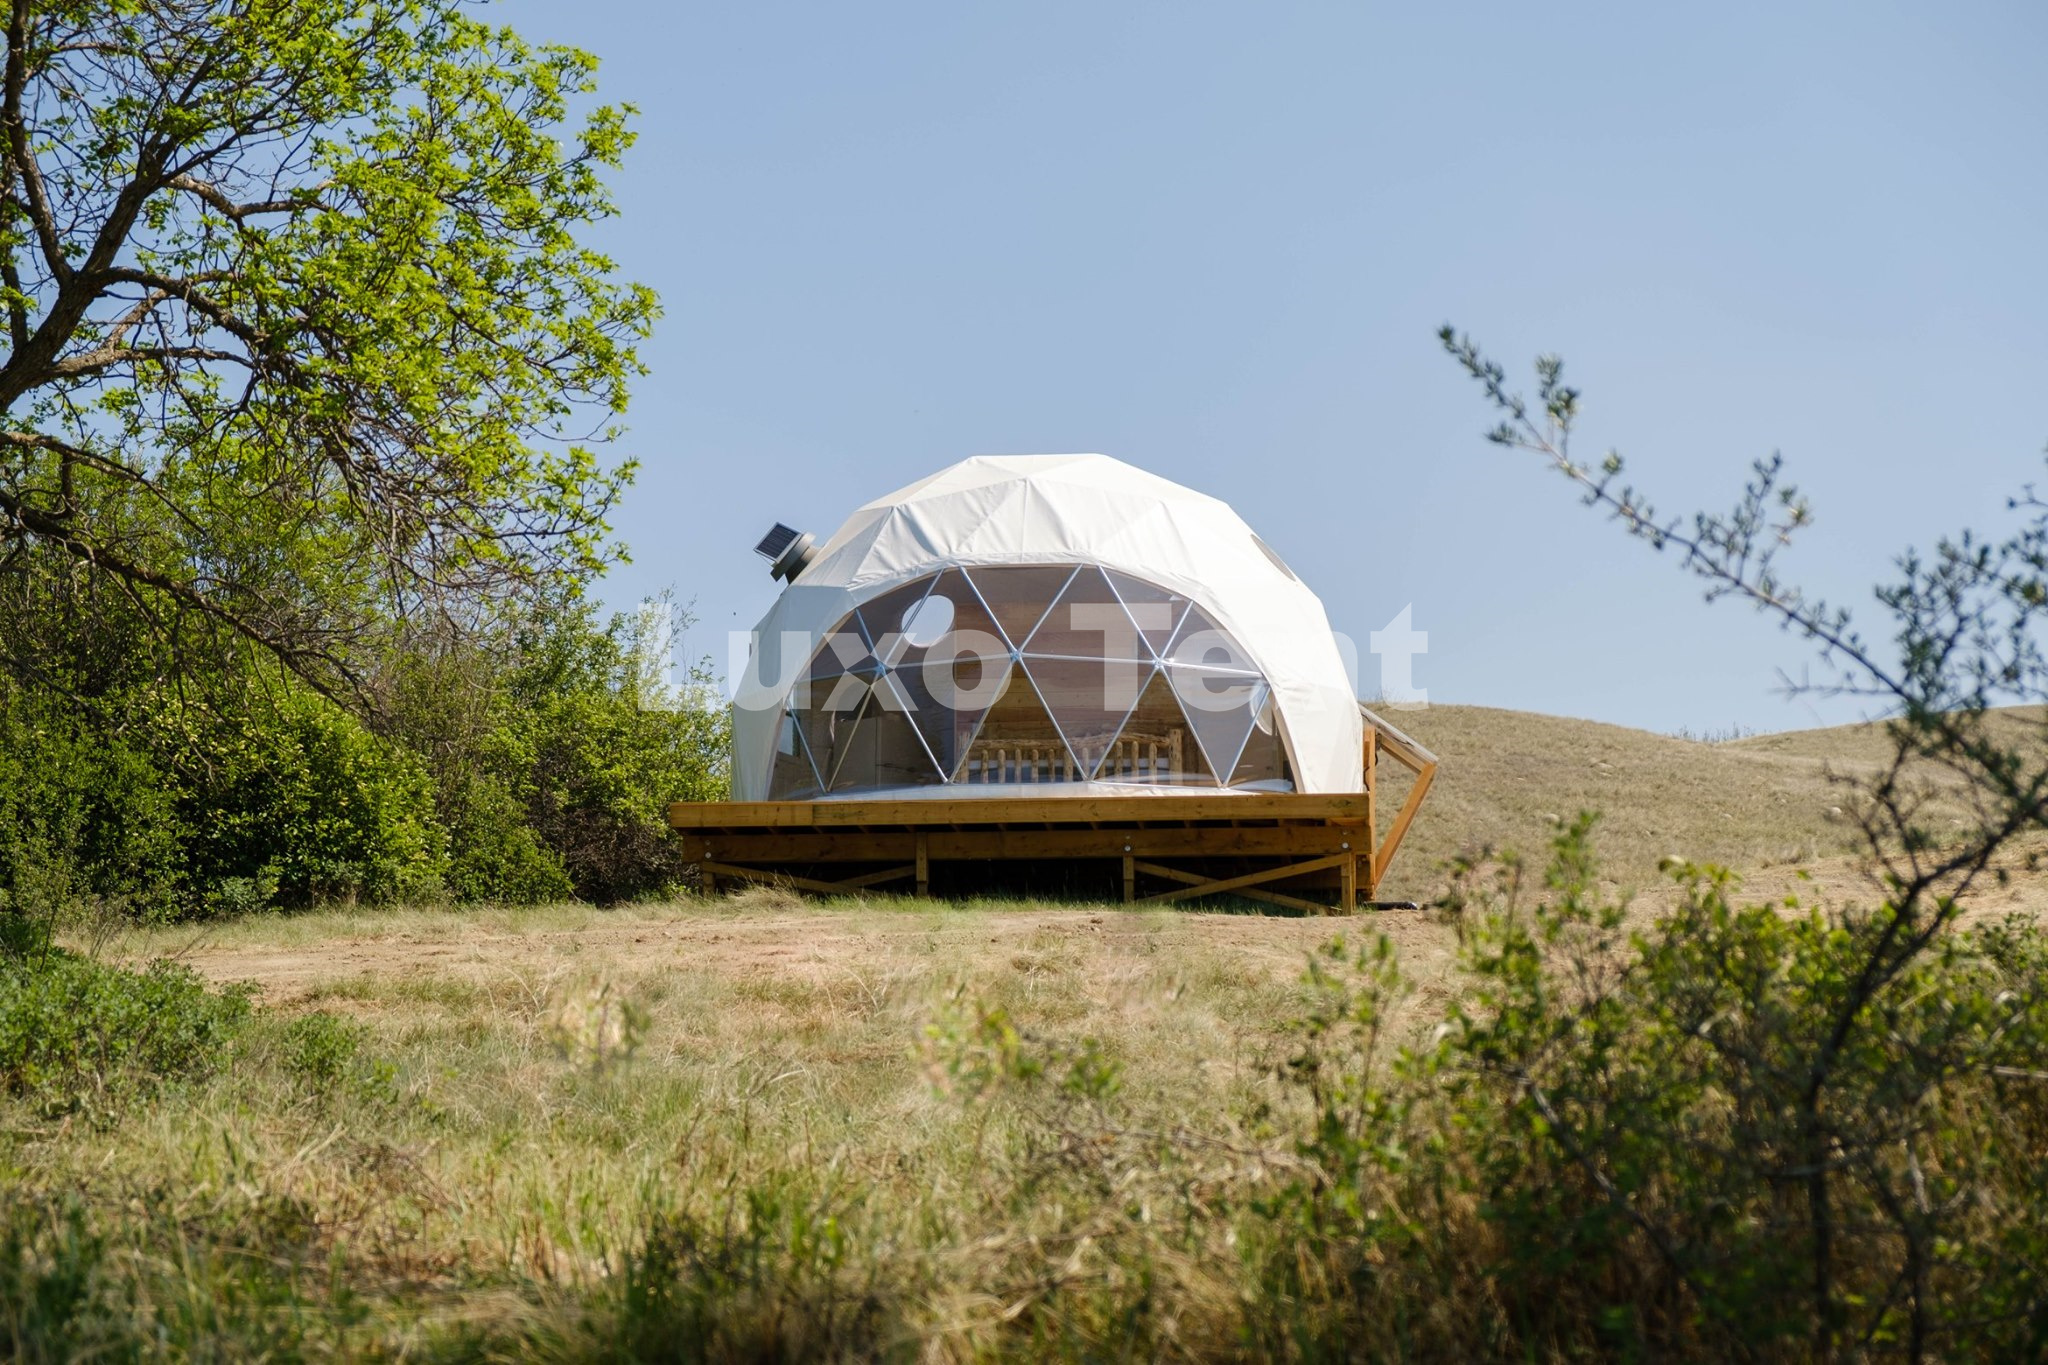 Maison de tente à dôme géodésique de 5 m avec ventilateur d'extraction solaire